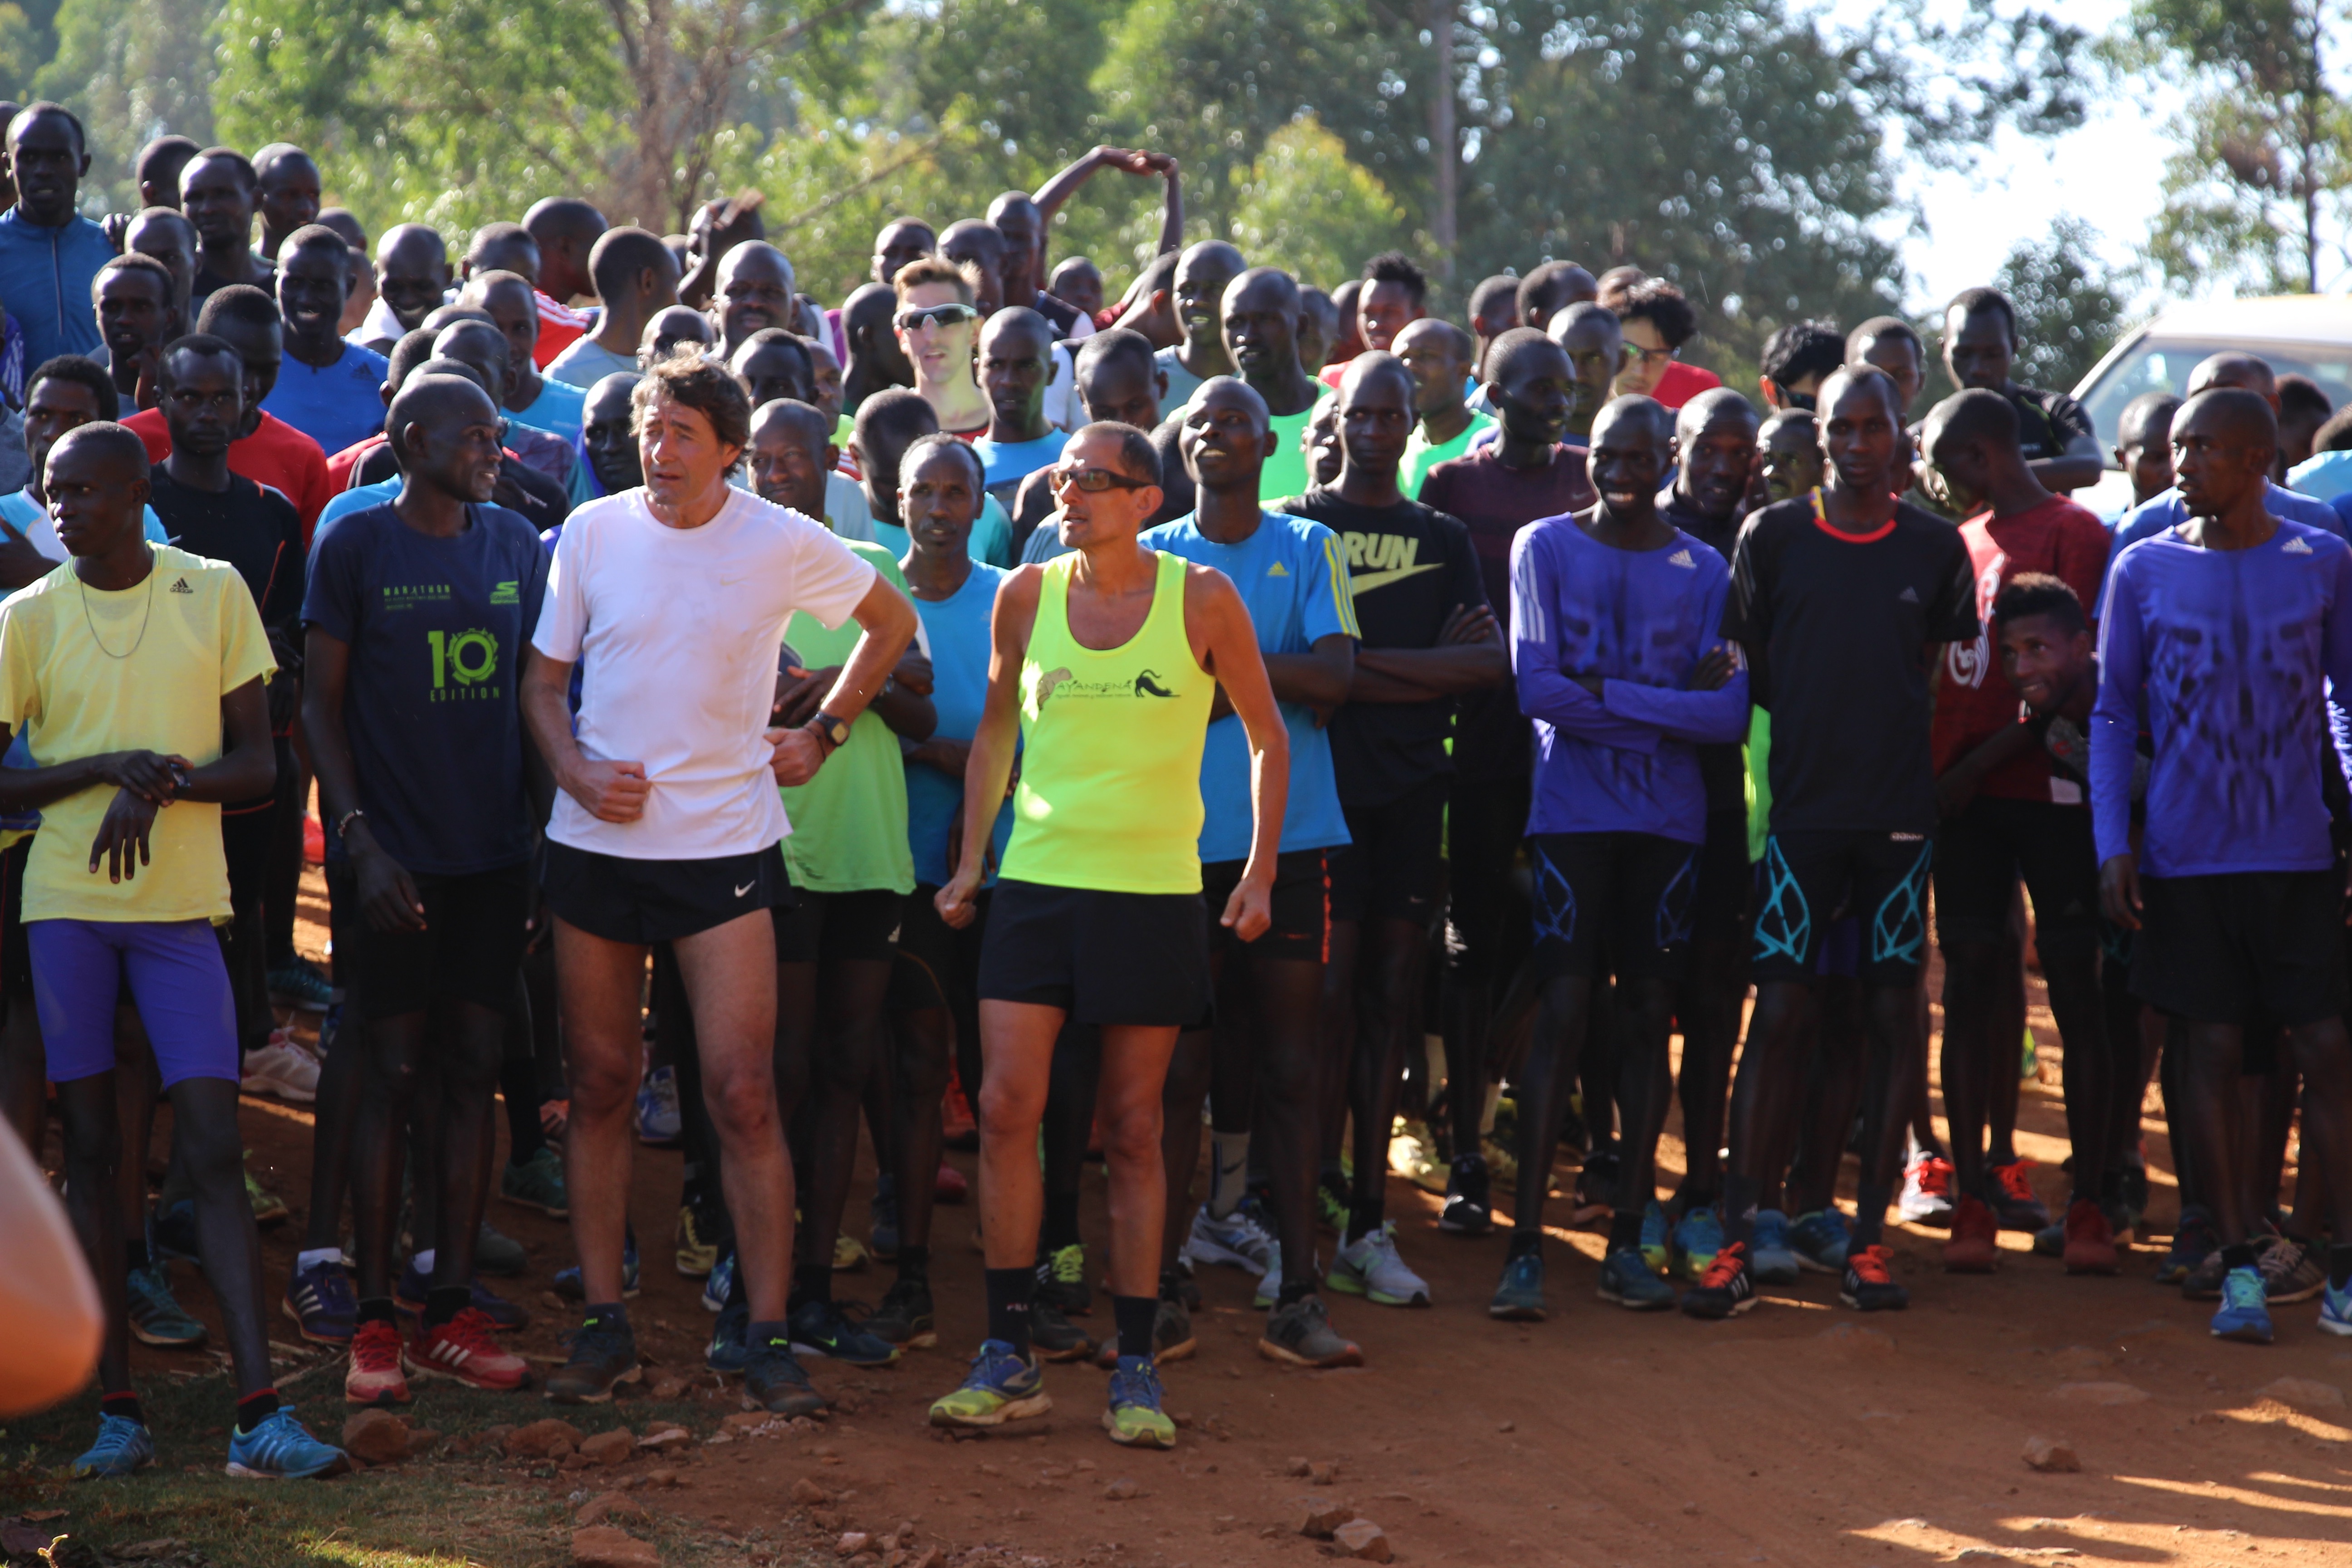 THE HEART OF KENYAN RUNNING: Corsa, benessere, cultura